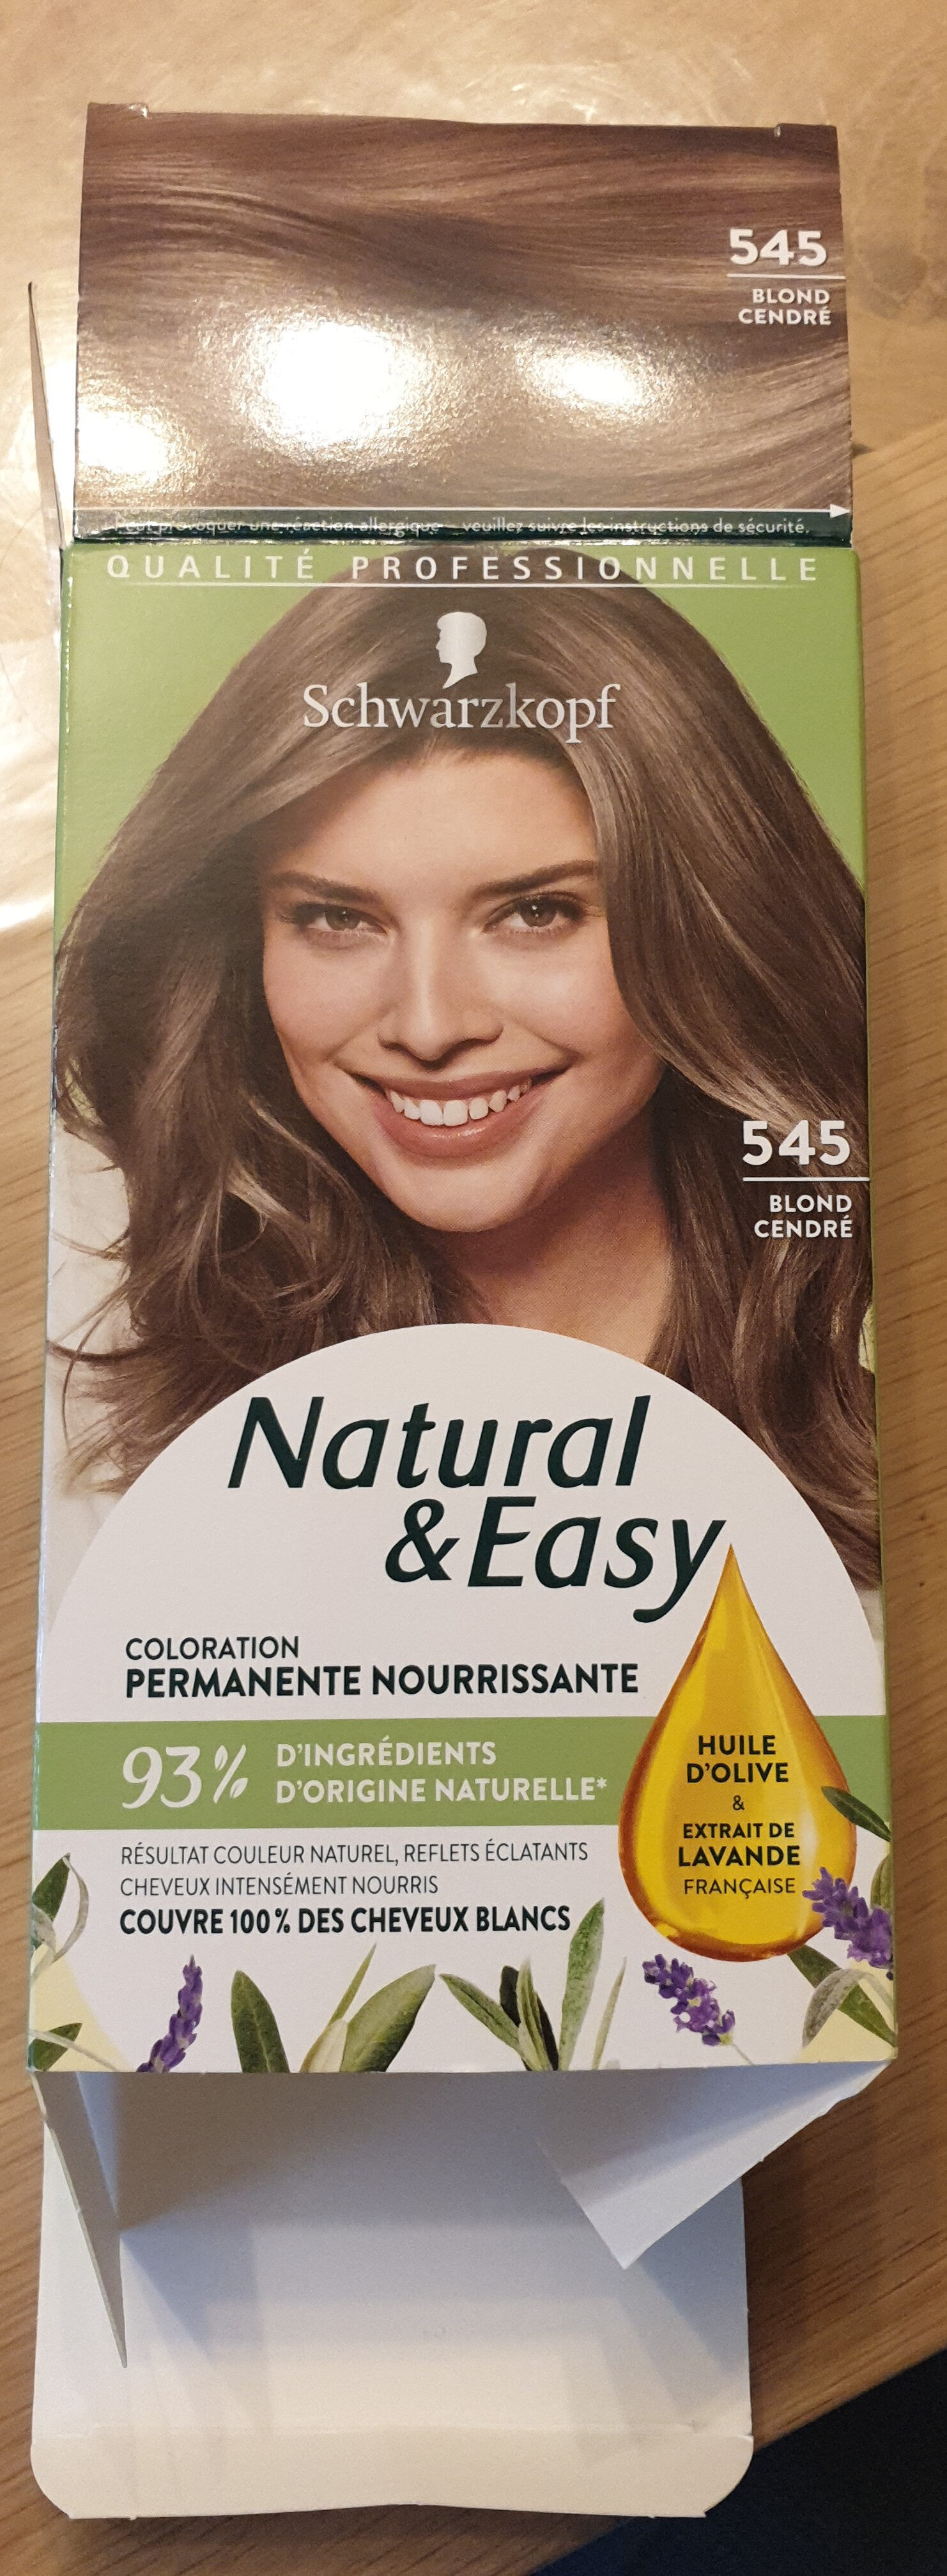 Natural & Easy 545 blond cendré - 製品 - fr